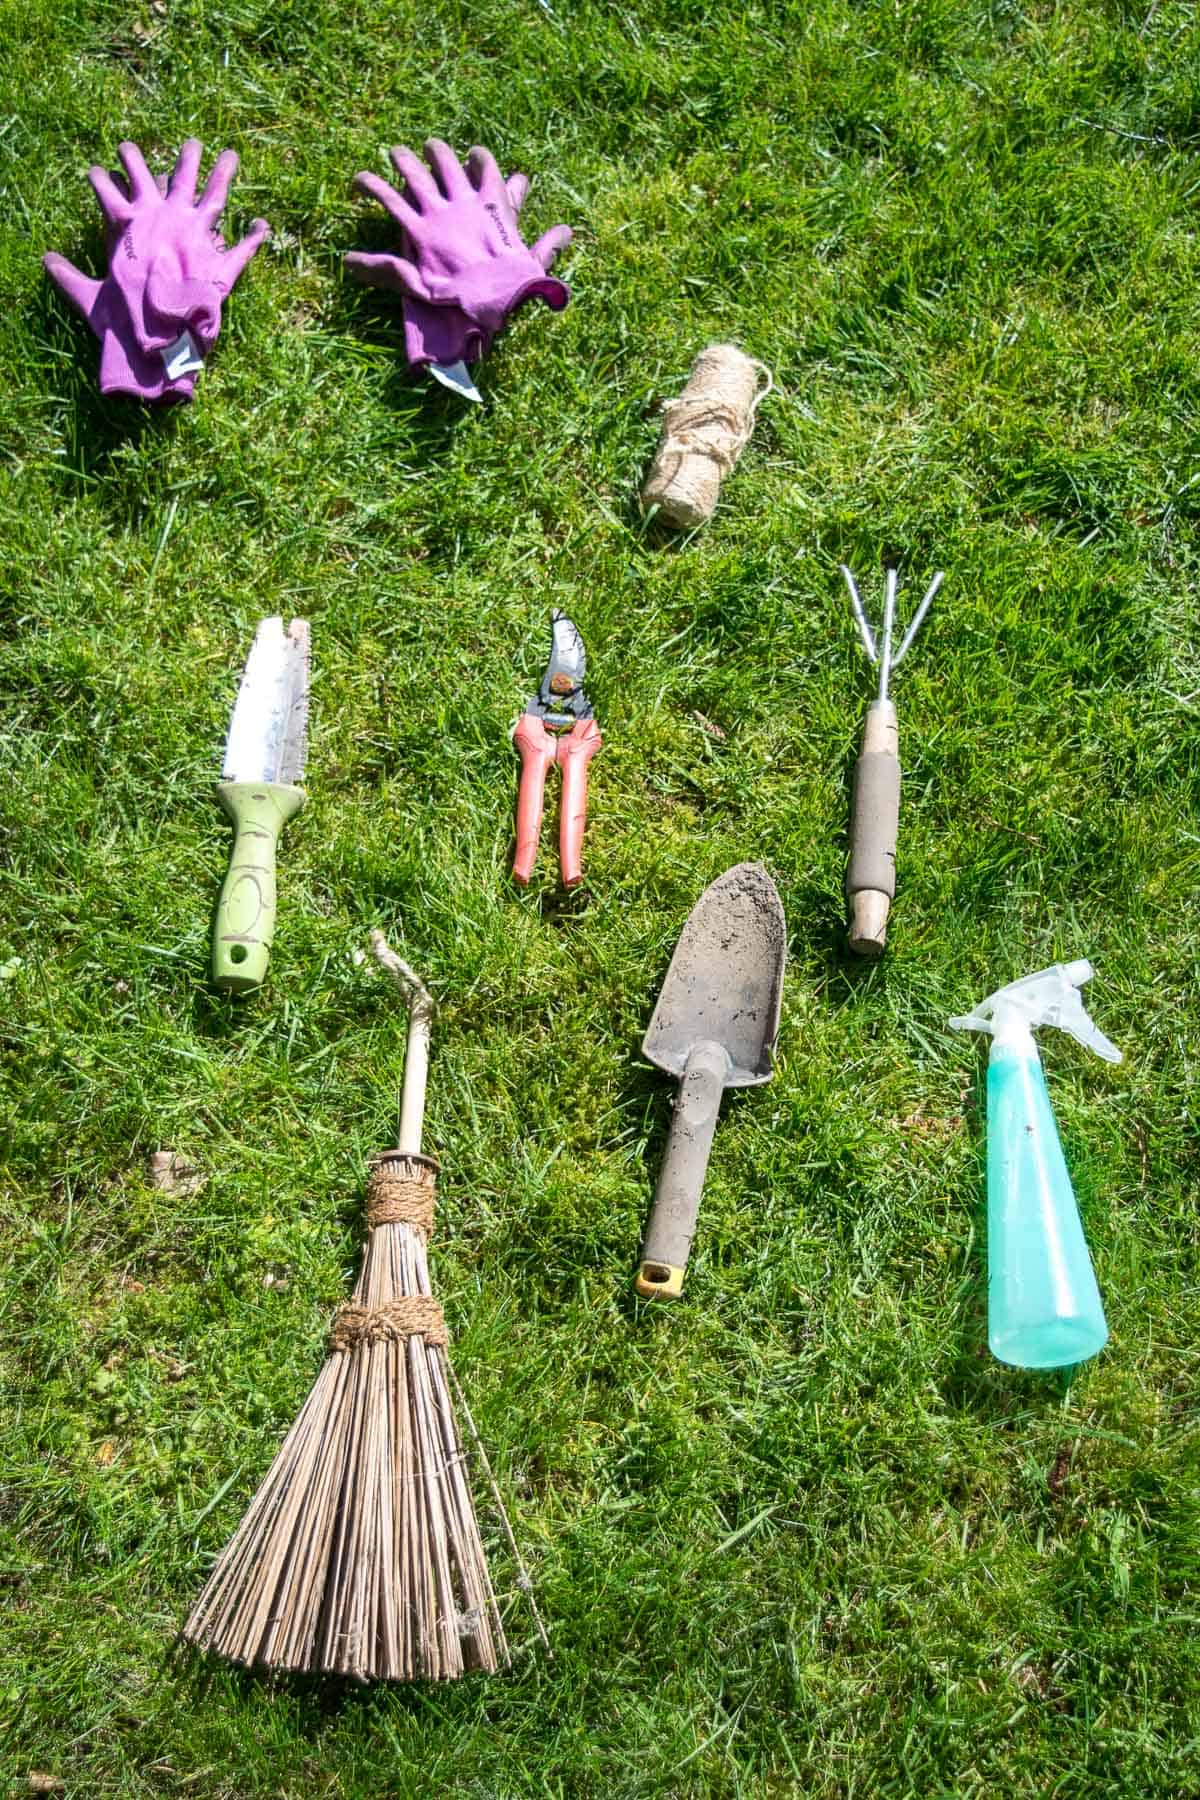 Cheap and Easy DIY Garden Tool Organizer - The Handyman's Daughter